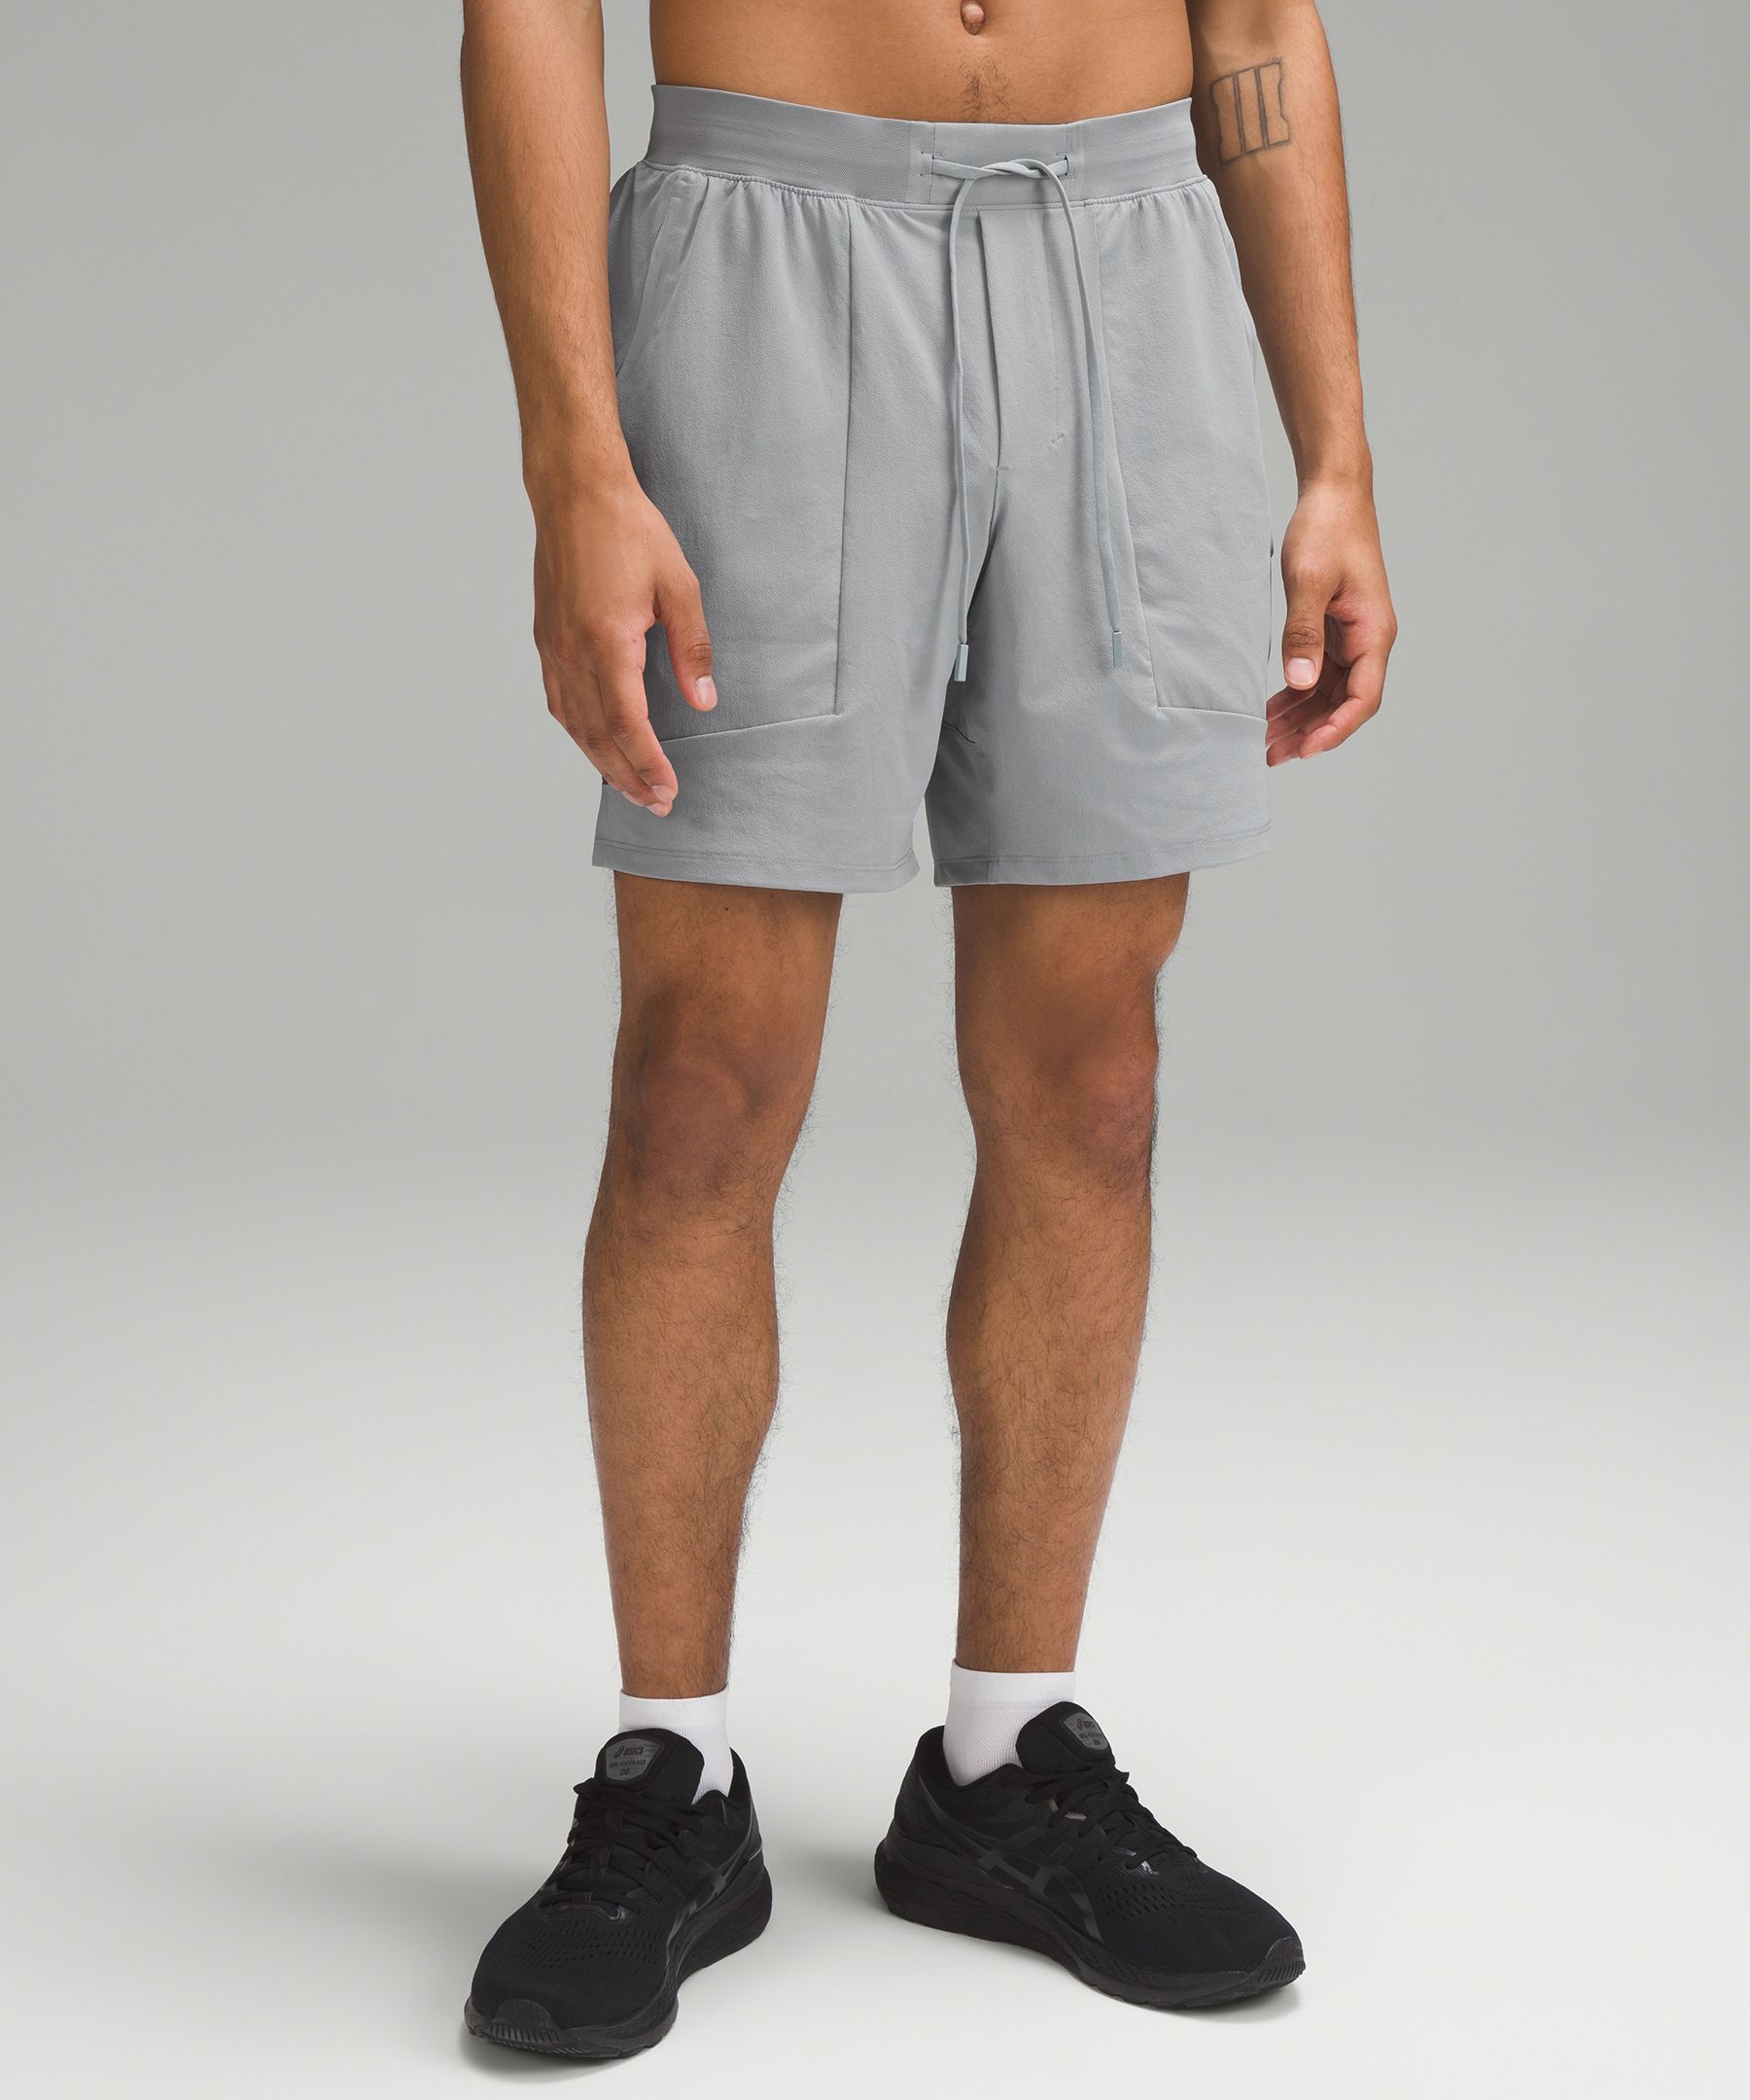 lululemon guys shorts